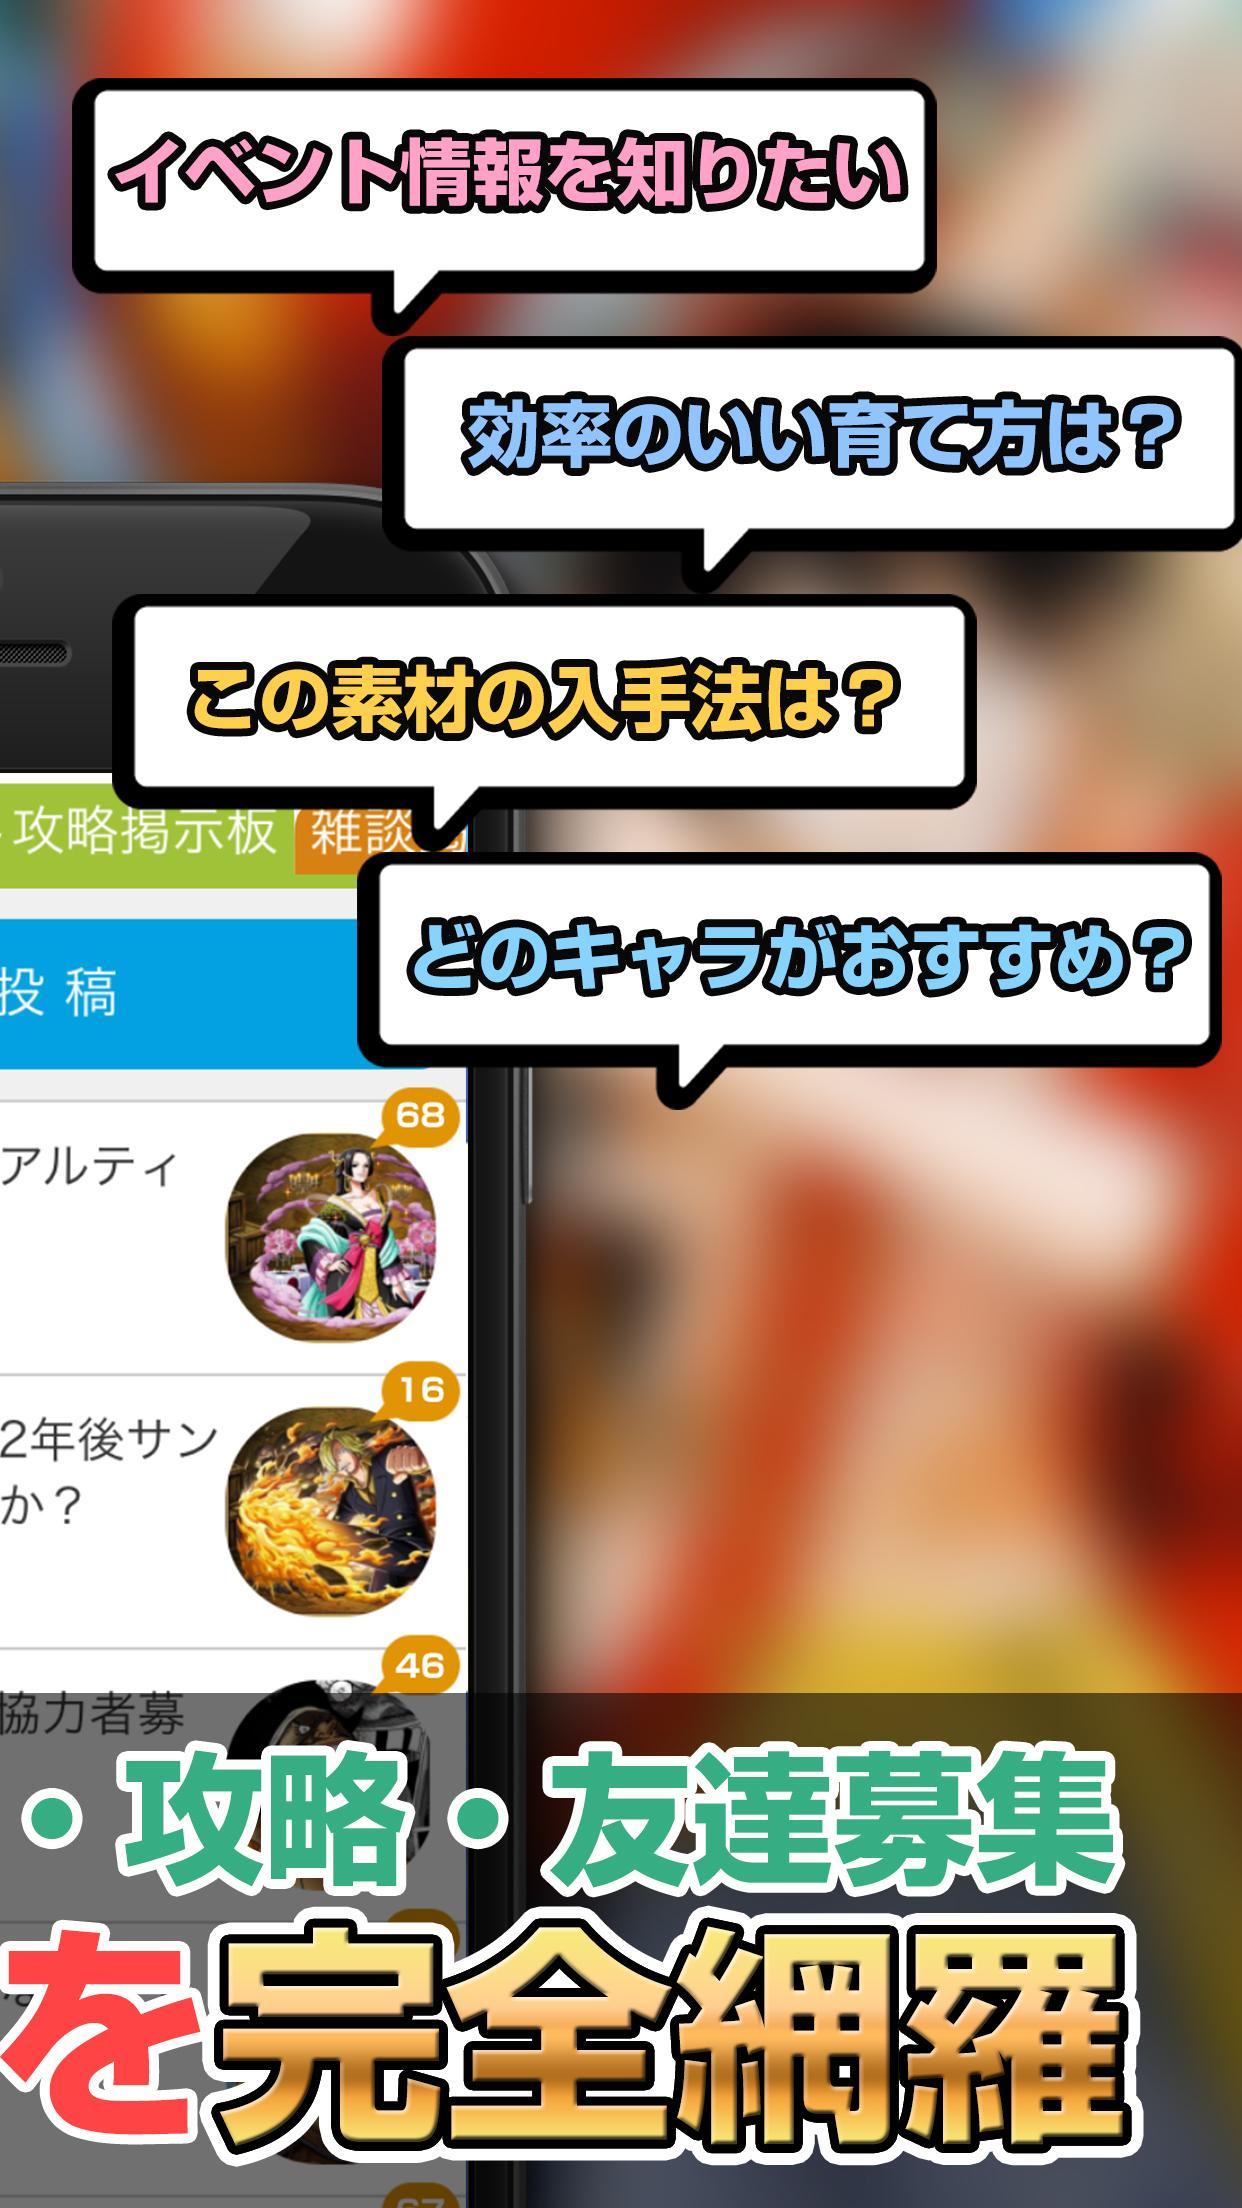 攻略情報 マルチ募集 For トレクル One Piece トレジャークルーズ Fur Android Apk Herunterladen